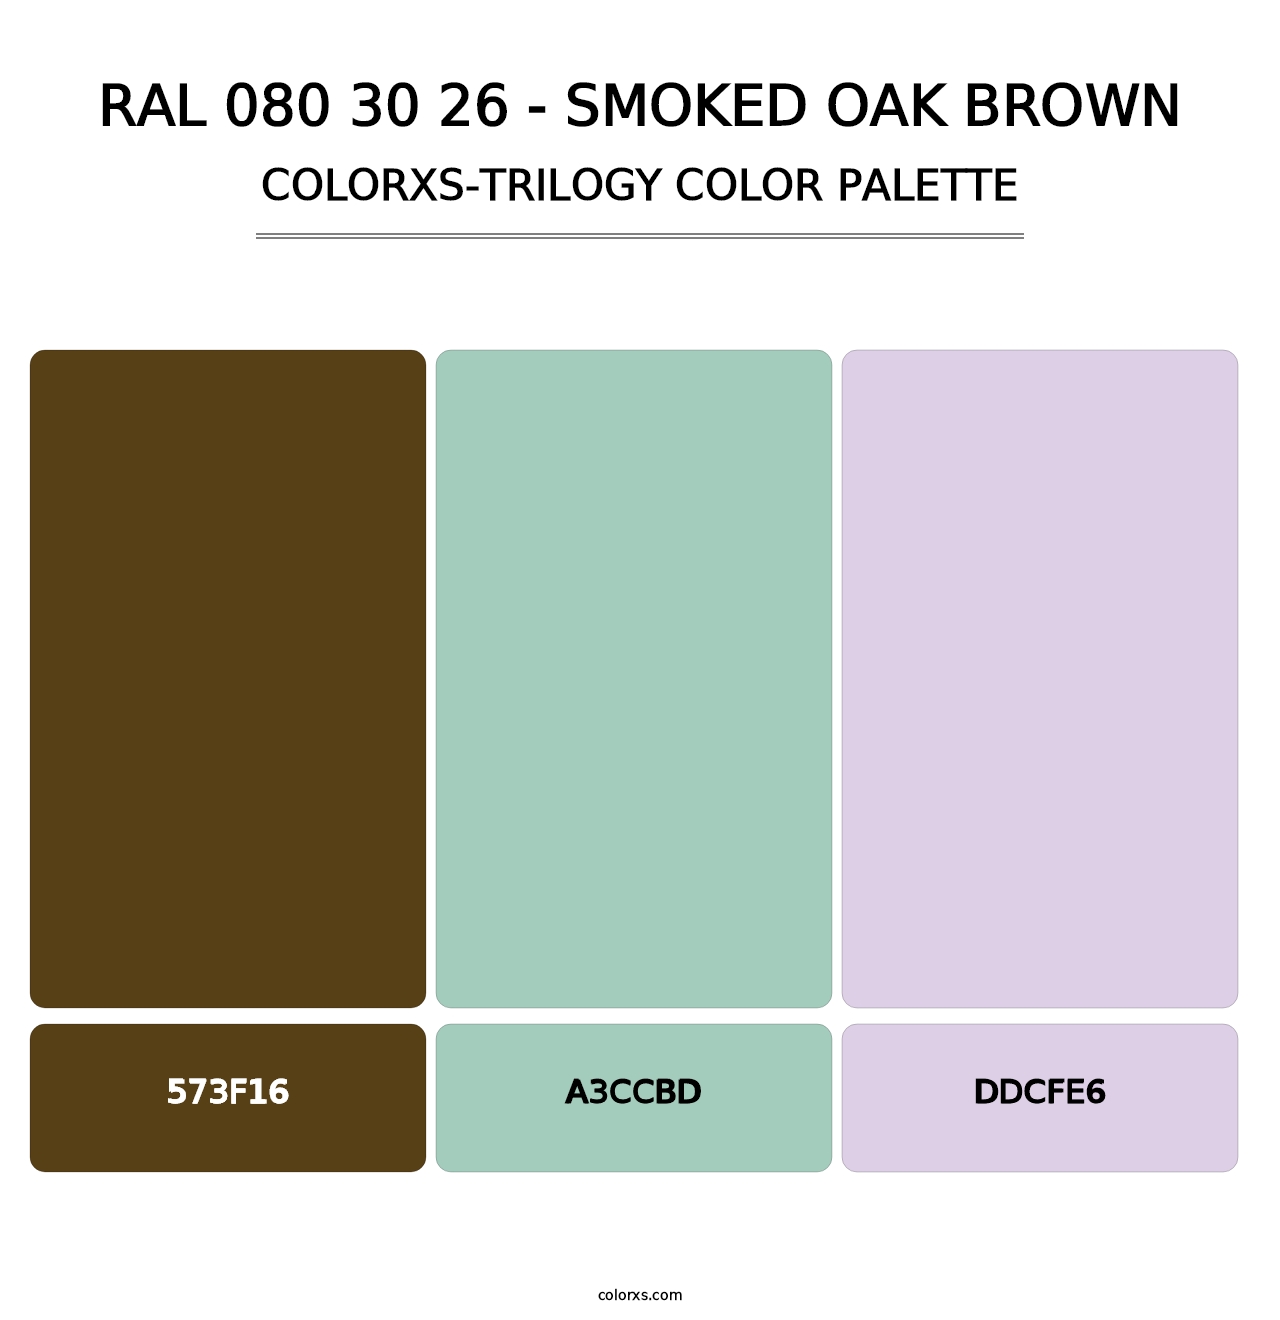 RAL 080 30 26 - Smoked Oak Brown - Colorxs Trilogy Palette